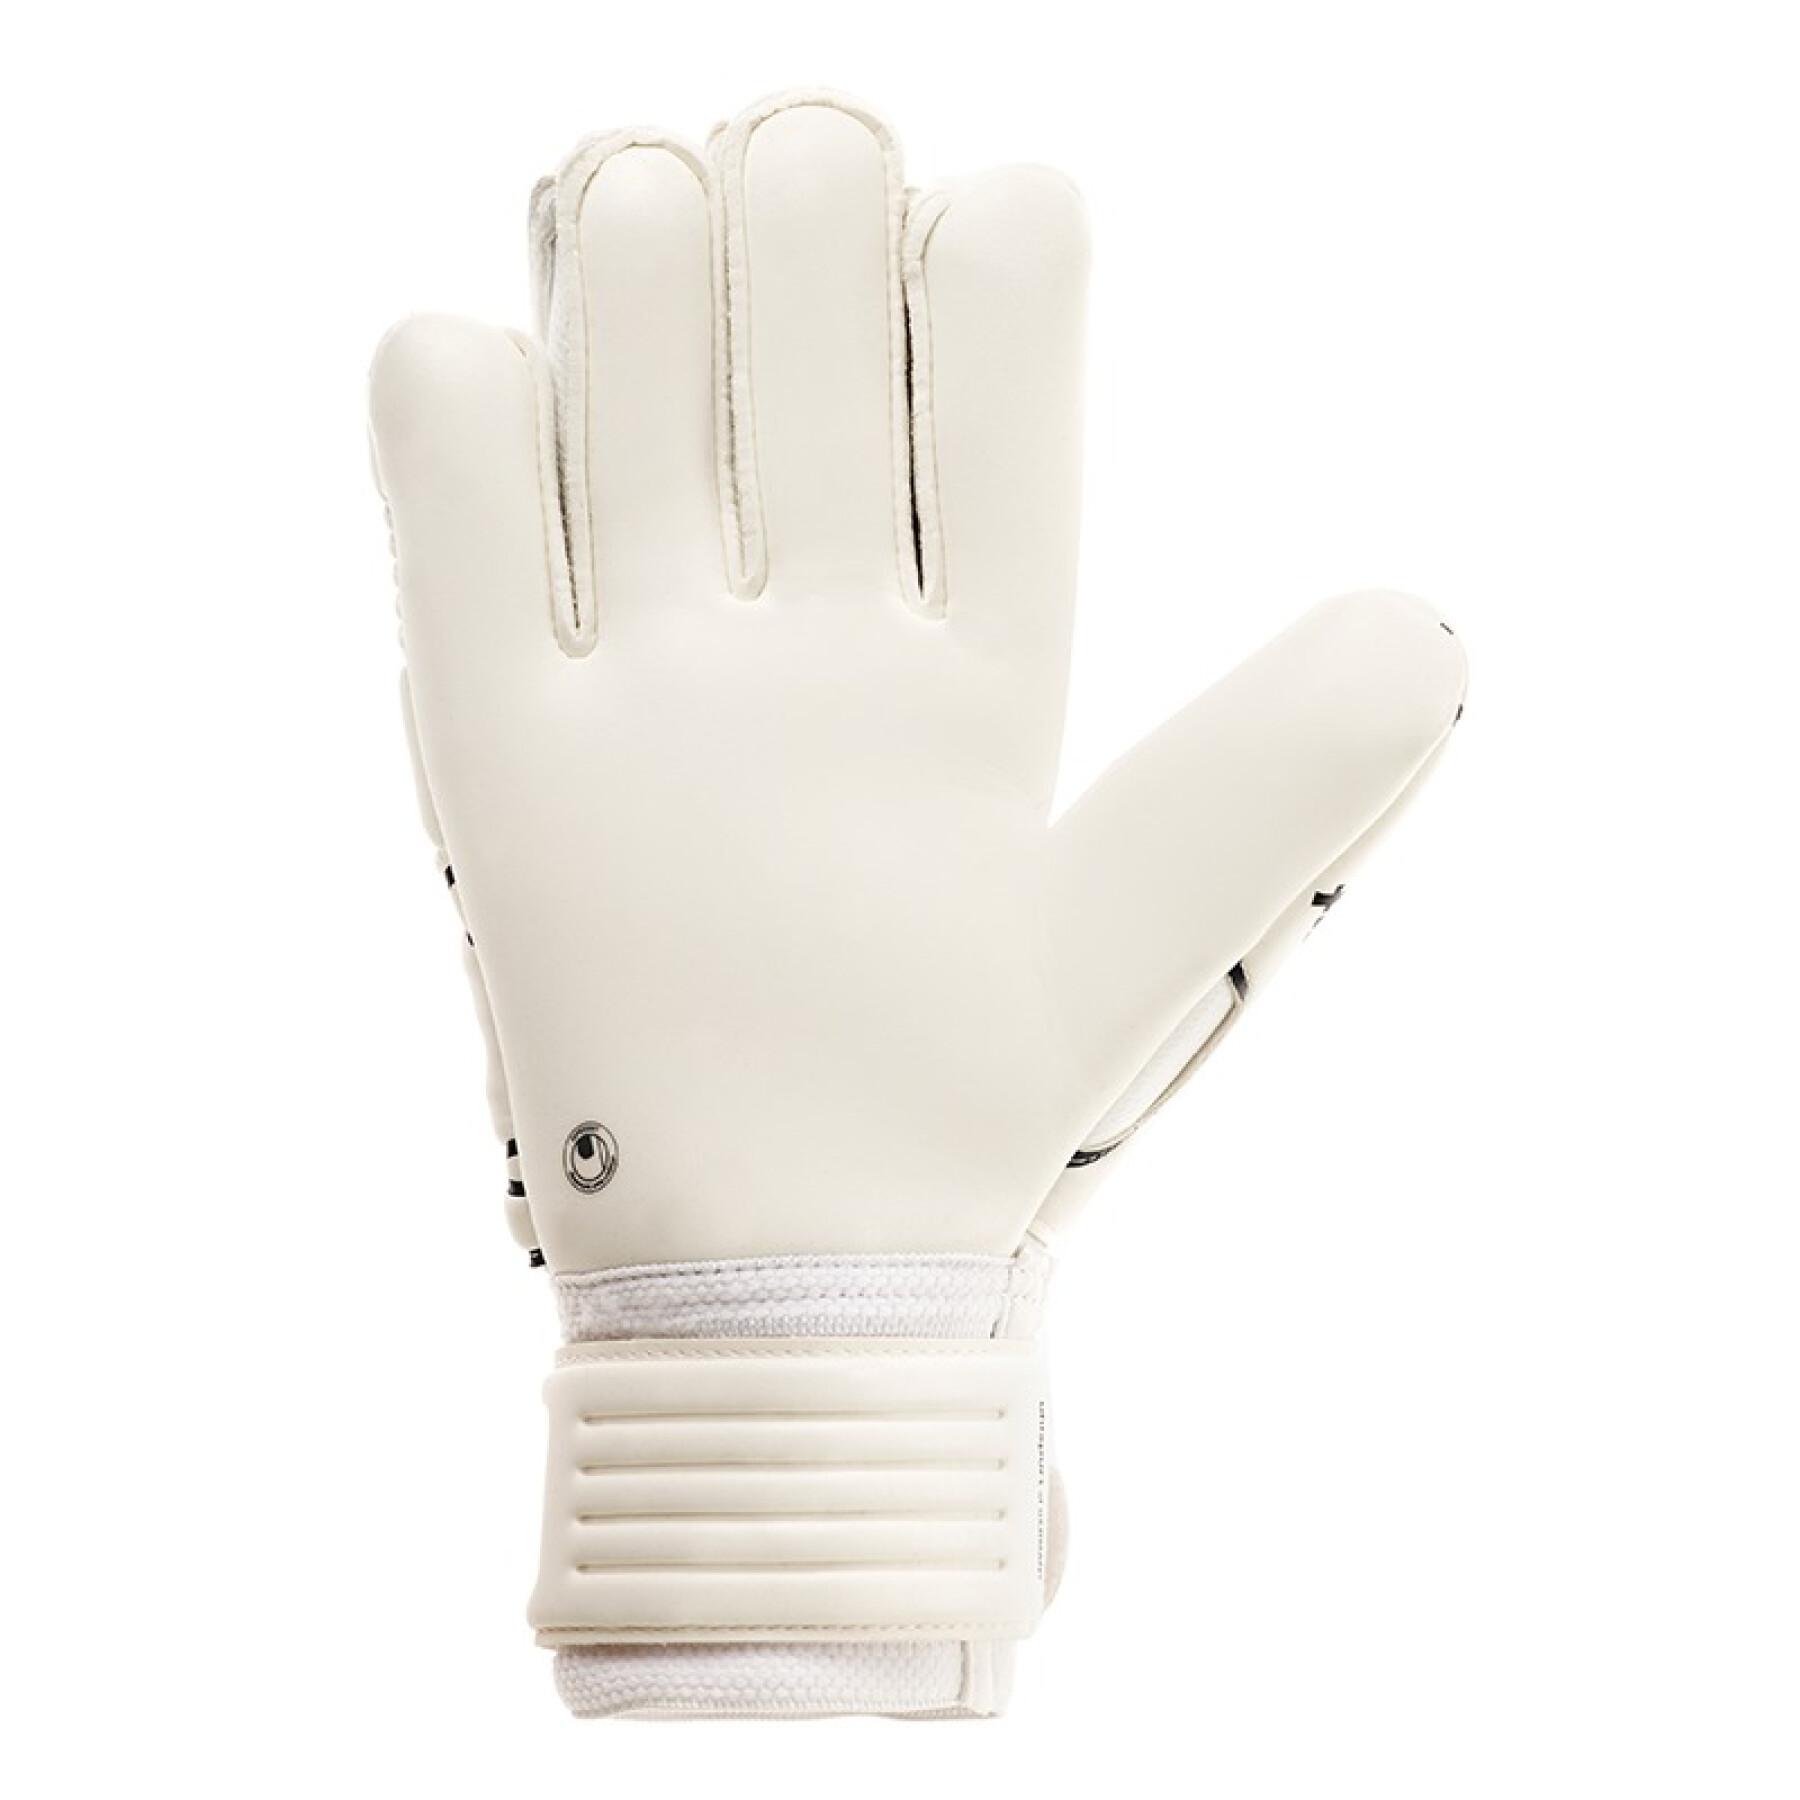 Goalkeeper gloves Uhlsport Eliminator Comfort Textile (2017)